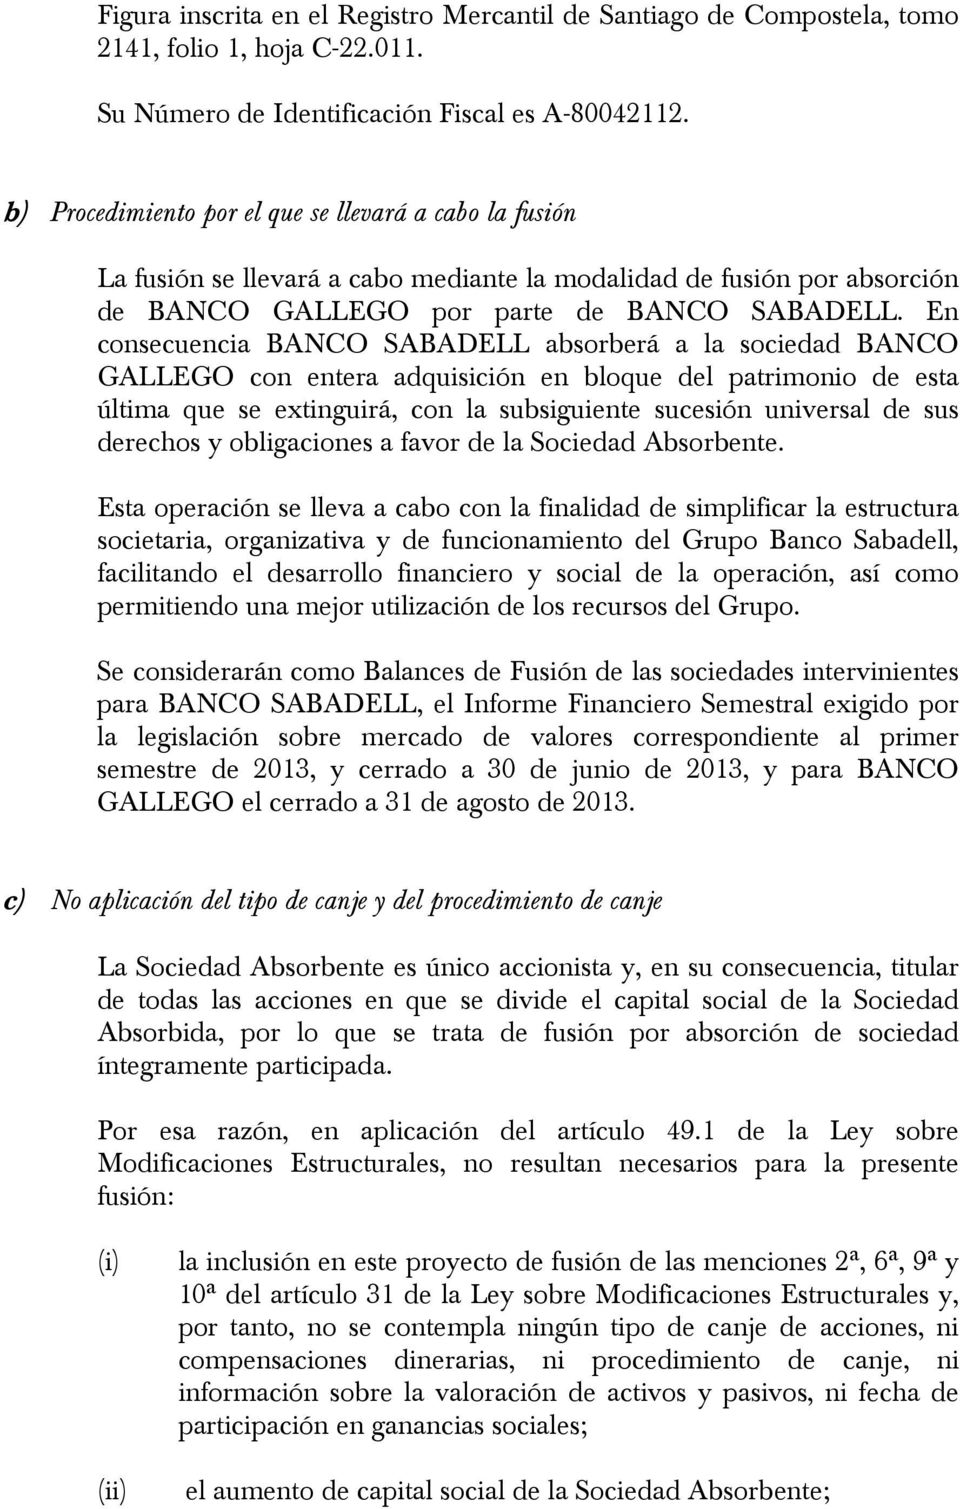 En consecuencia BANCO SABADELL absorberá a la sociedad BANCO GALLEGO con entera adquisición en bloque del patrimonio de esta última que se extinguirá, con la subsiguiente sucesión universal de sus